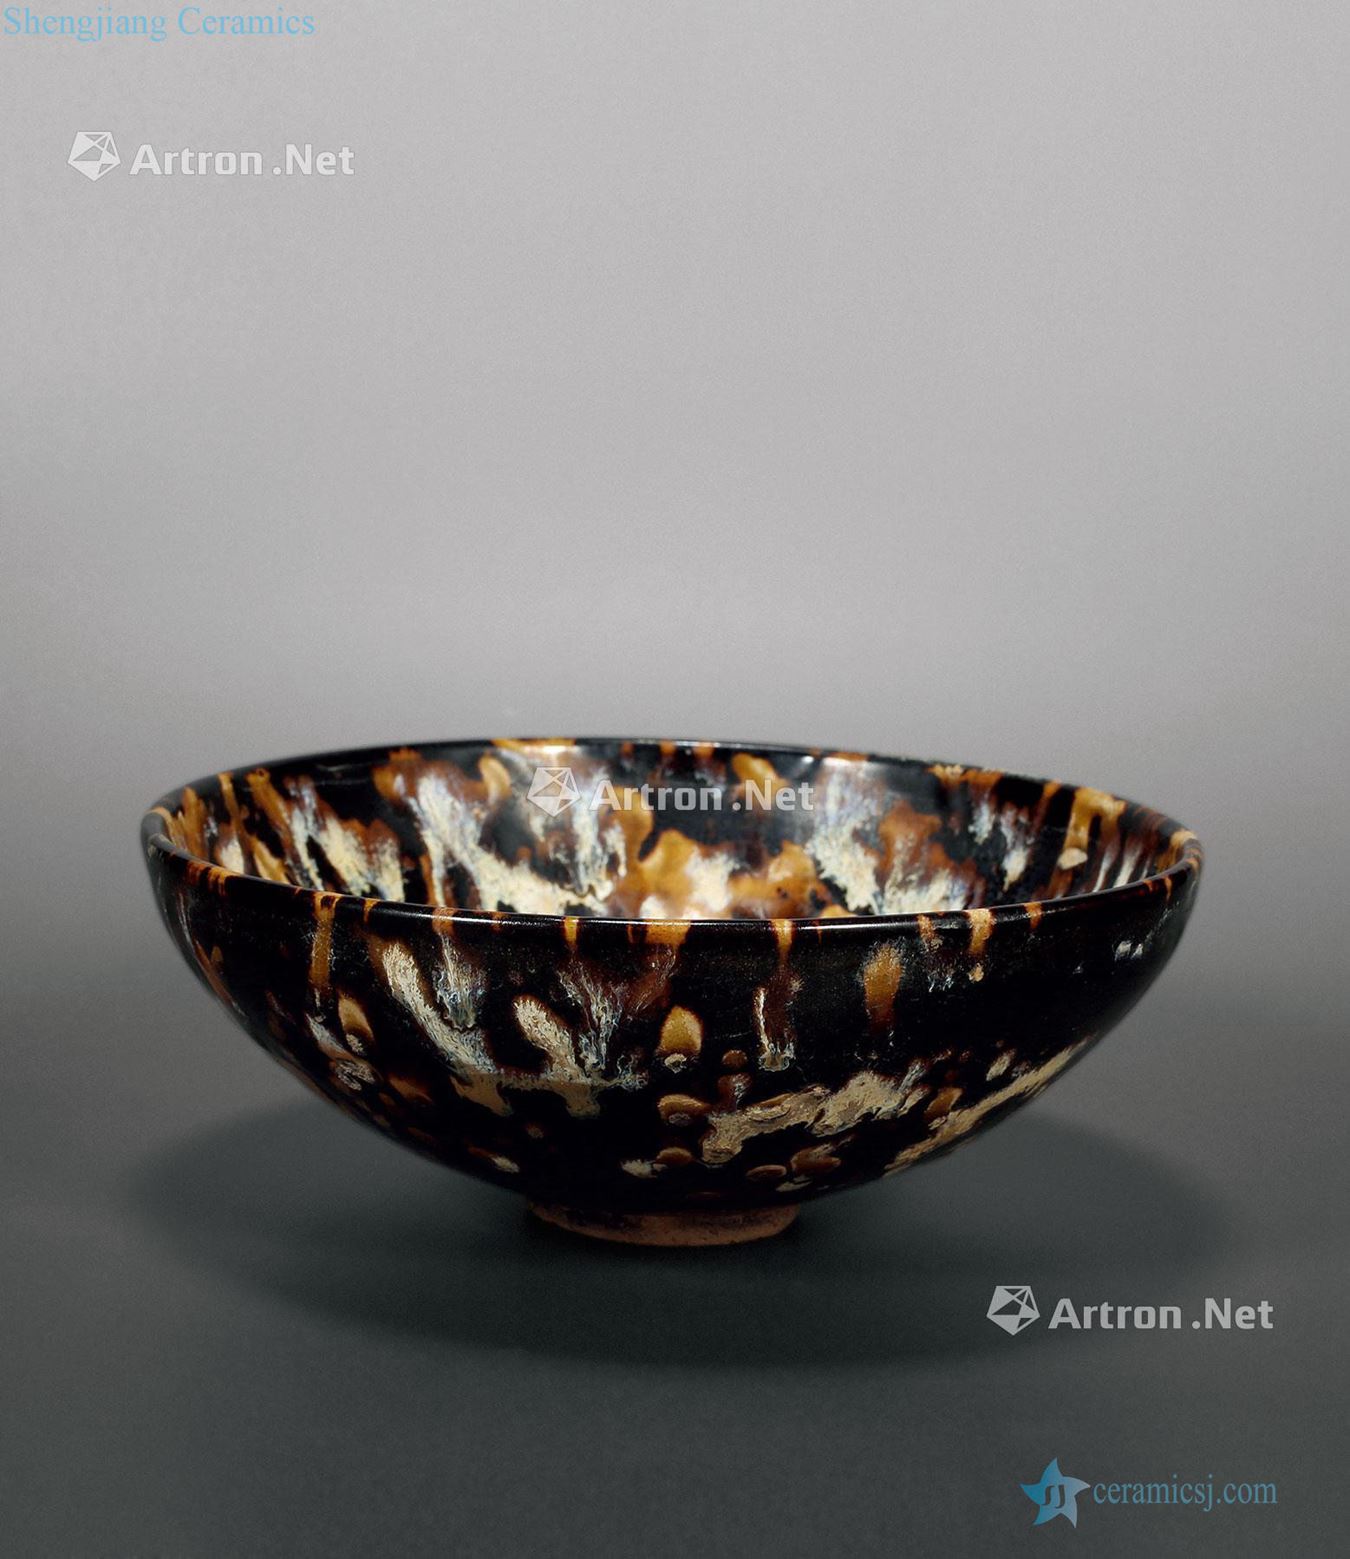 The southern song dynasty jizhou kiln hawksbill spot glaze bowls